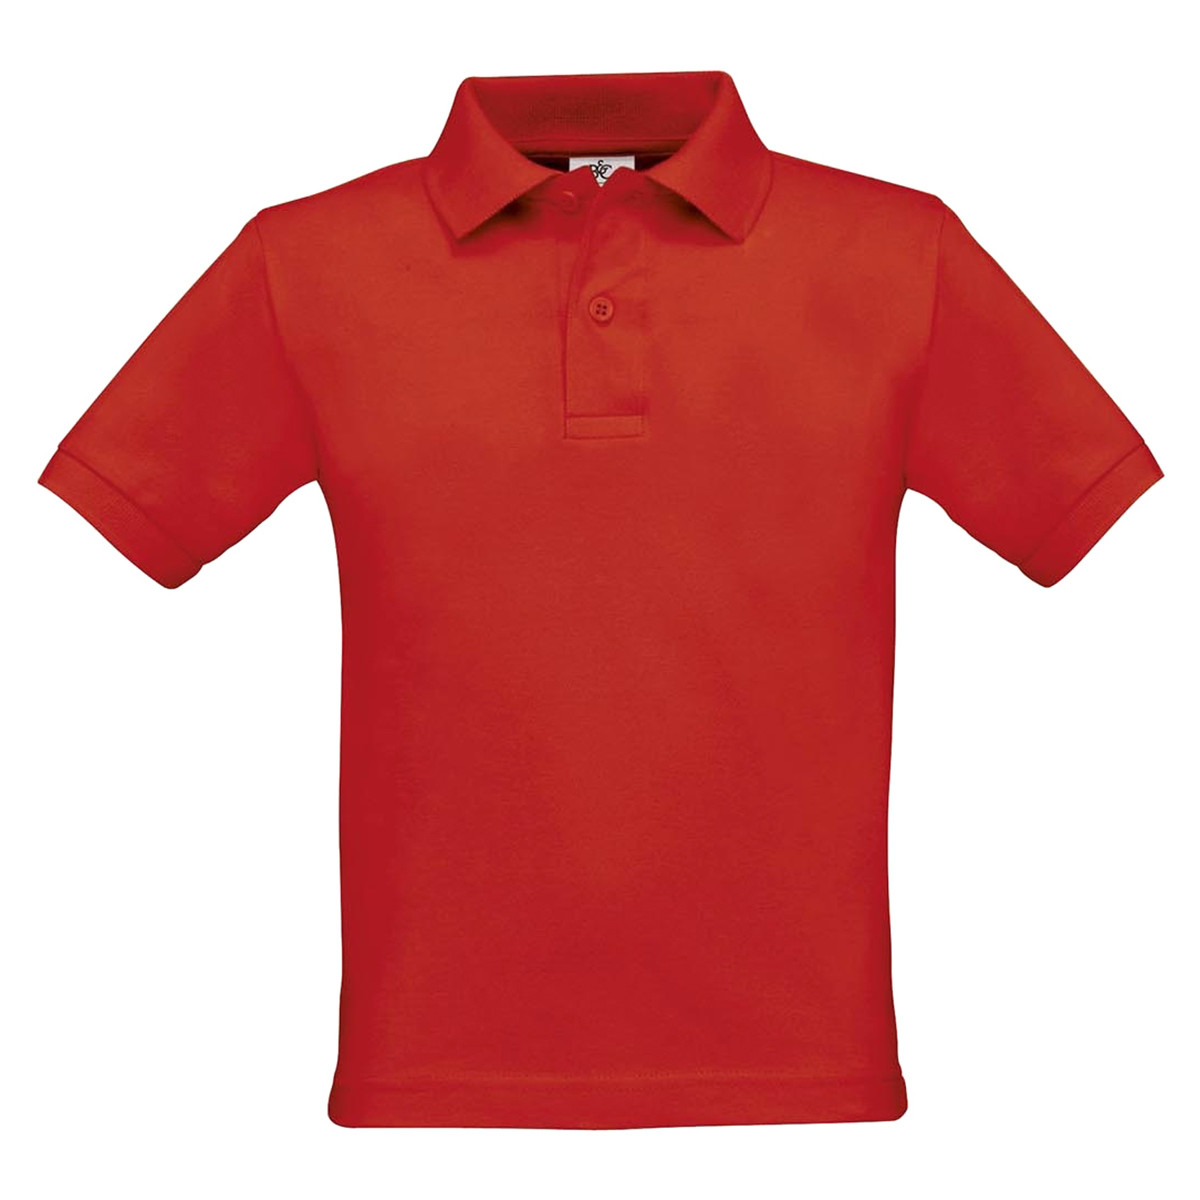 Vêtements Enfant WIP Robie T-Shirt Levi's Kids Boys T-Shirts for Kids PK486 Rouge